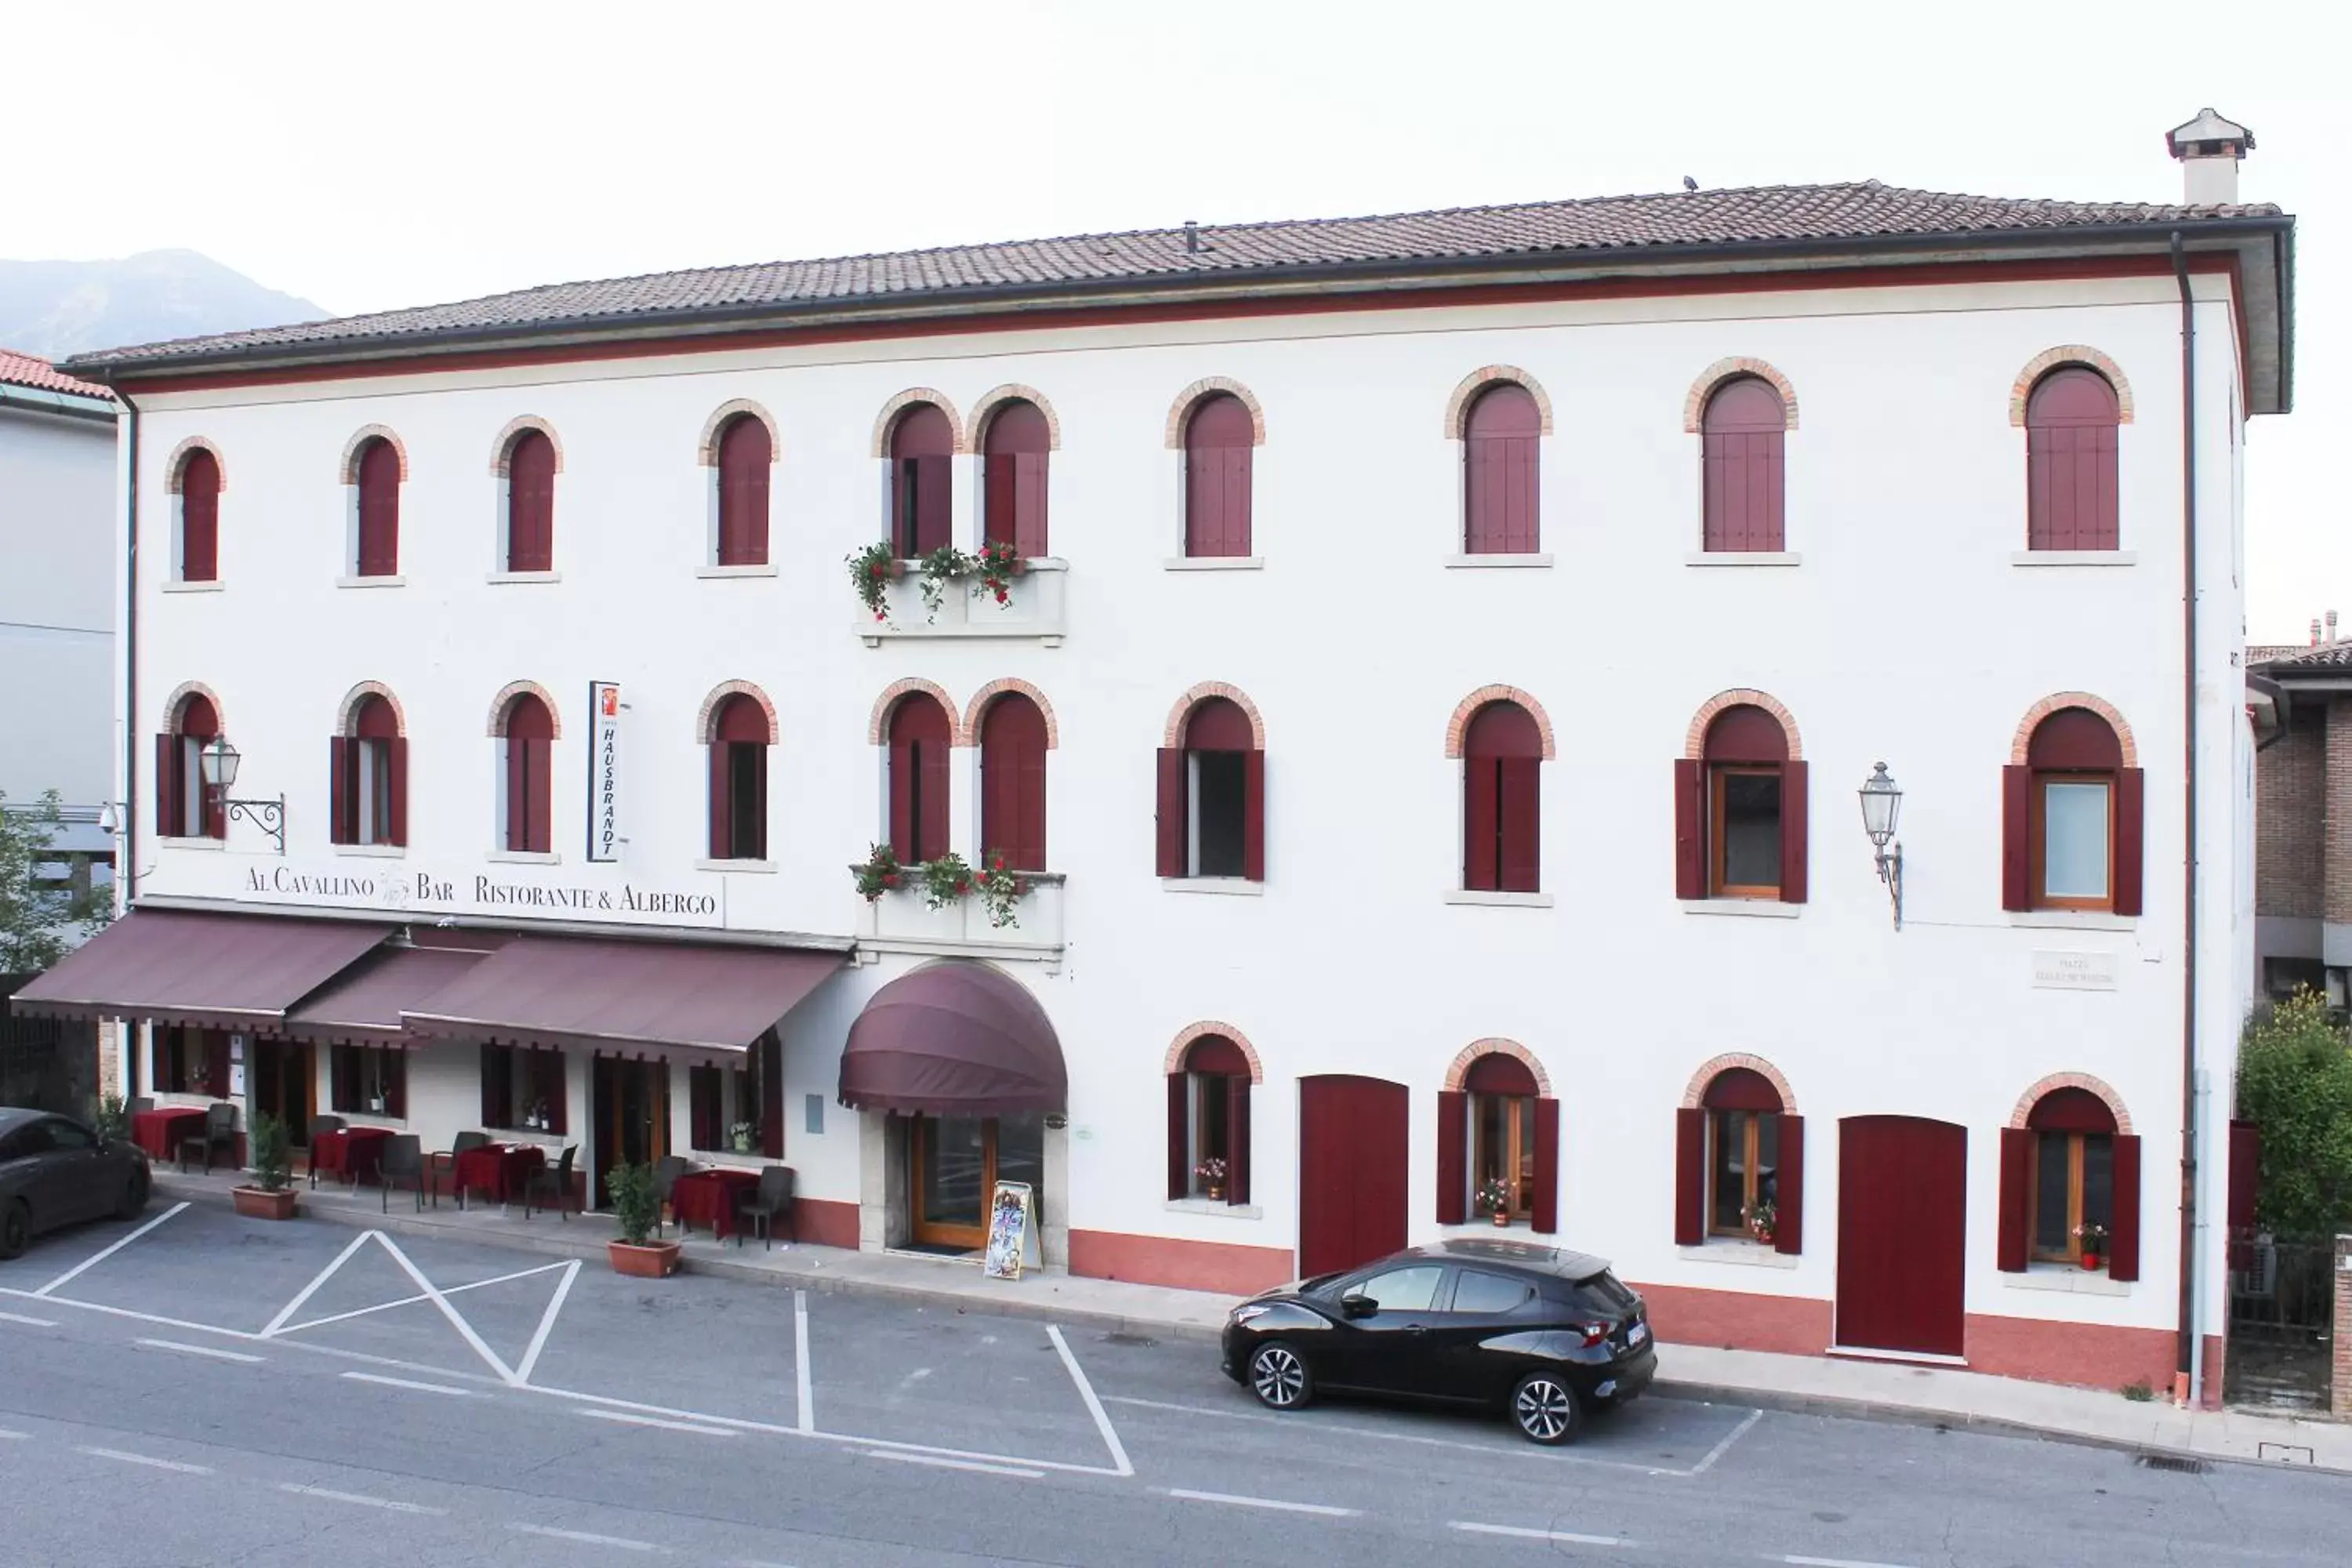 Property building in Al Cavallino